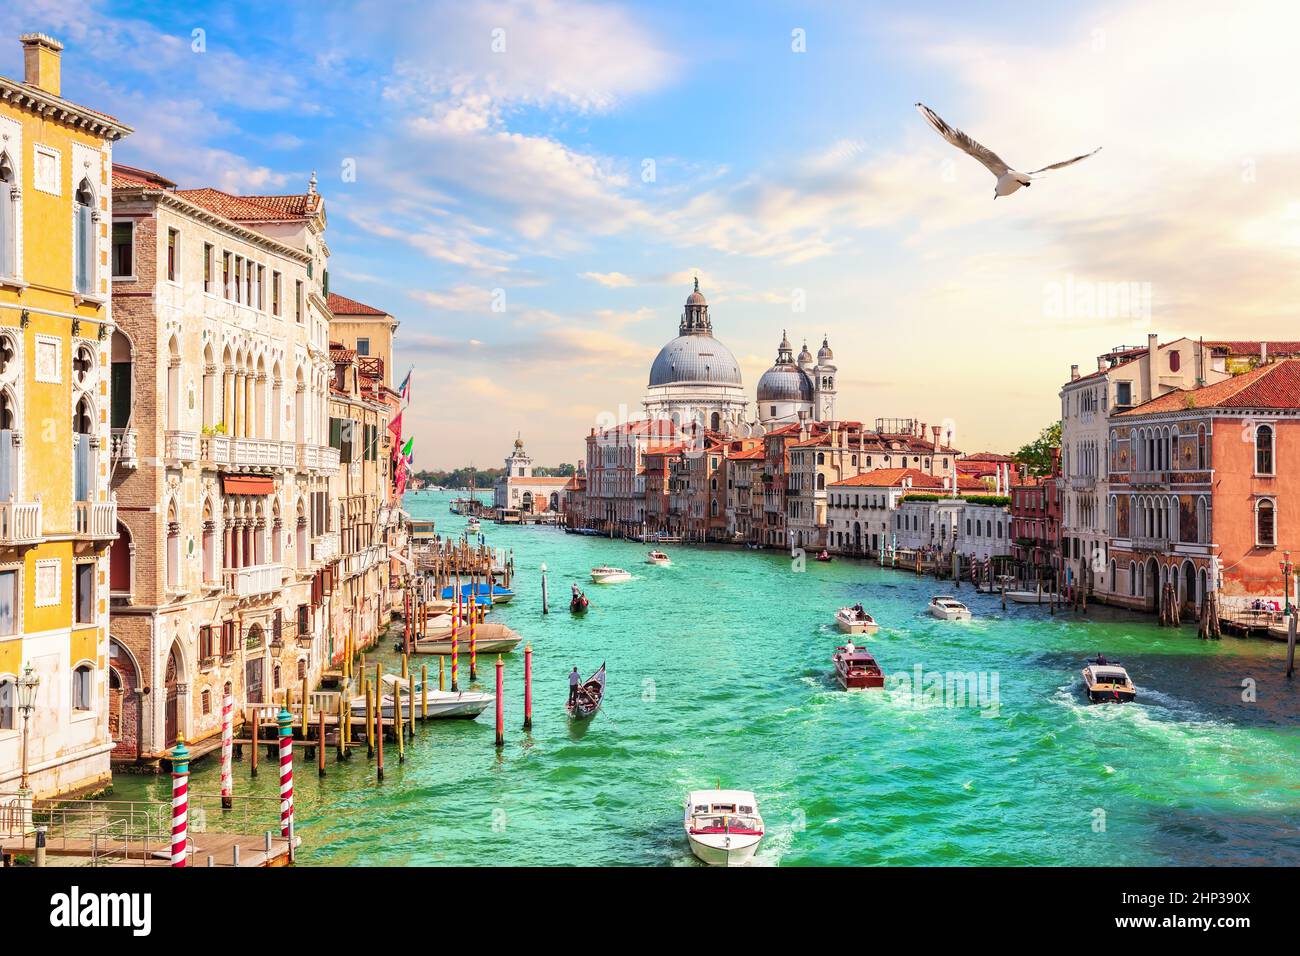 Venice Grand Canal, view of the Lagoon near Santa Maria della Salute, Italy. Stock Photo